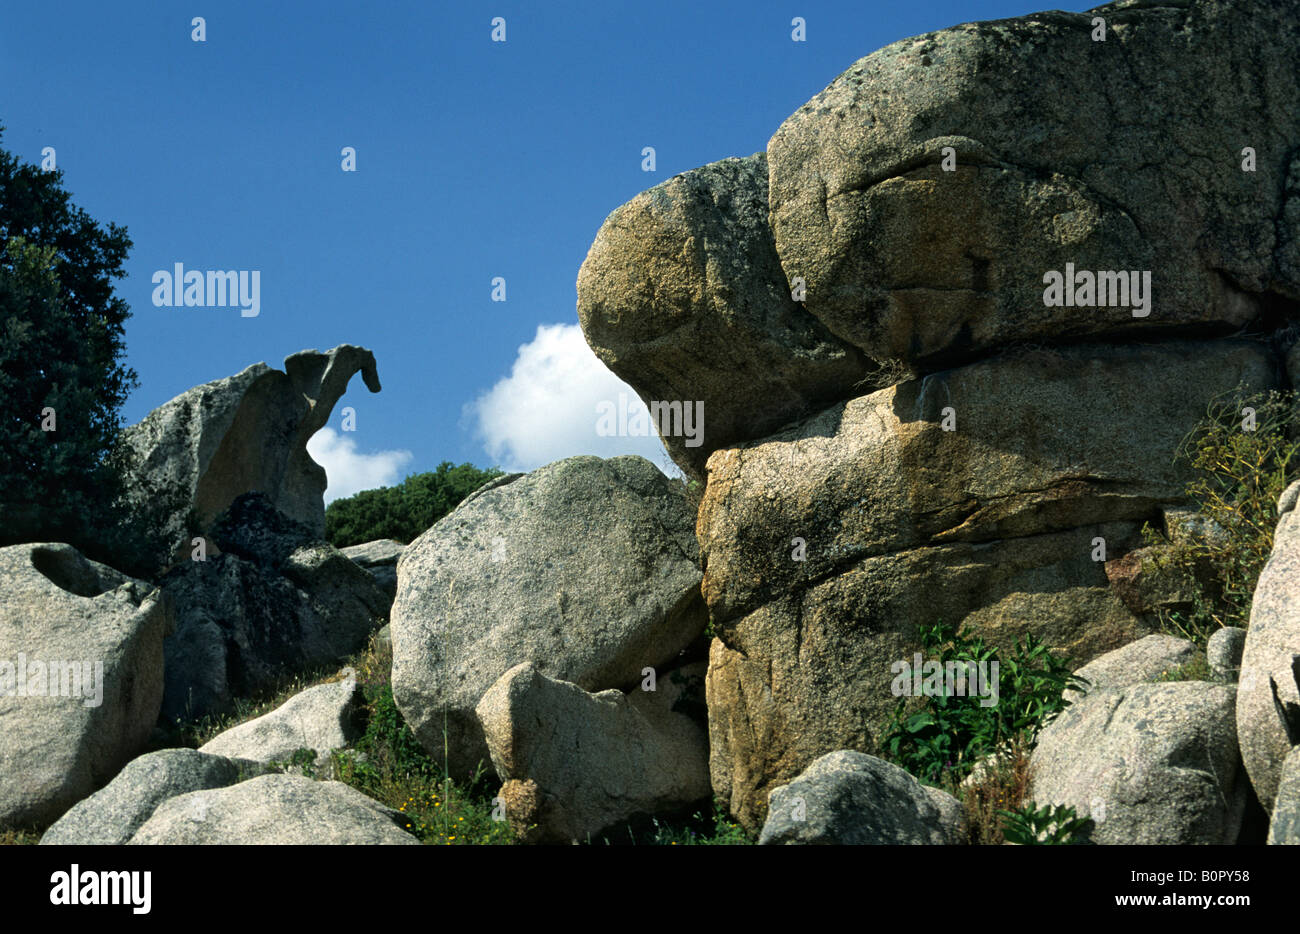 Corse ile de beaute geologie Stock Photo